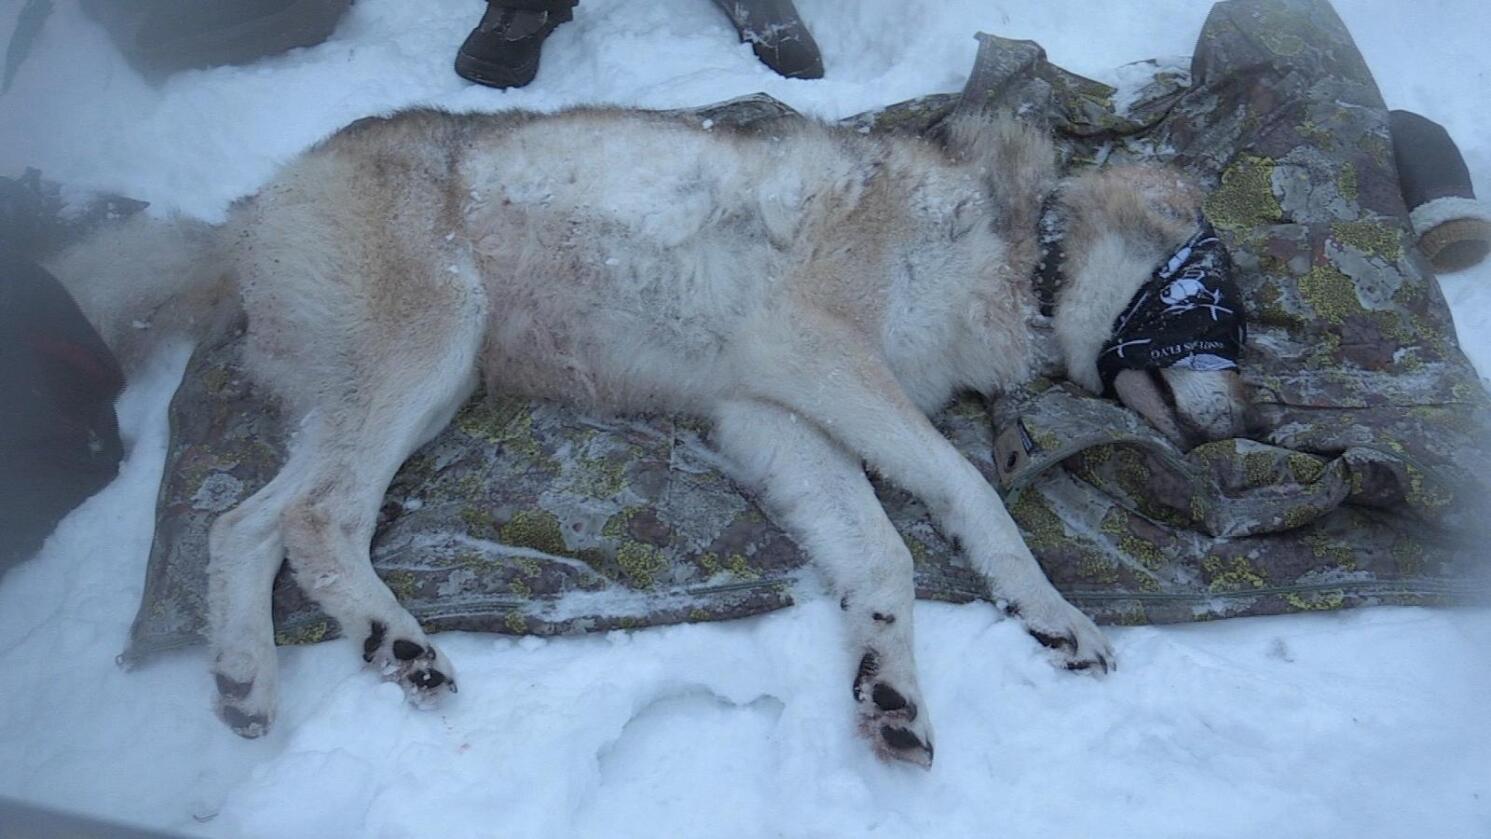 Ulvene i Slettåsreviret ble gps-merket i januar. Nå vil svenske myndigheter skyte en av ulvene fordi den er nærgående. Foto: Henrik Skolt / NTB scanpix